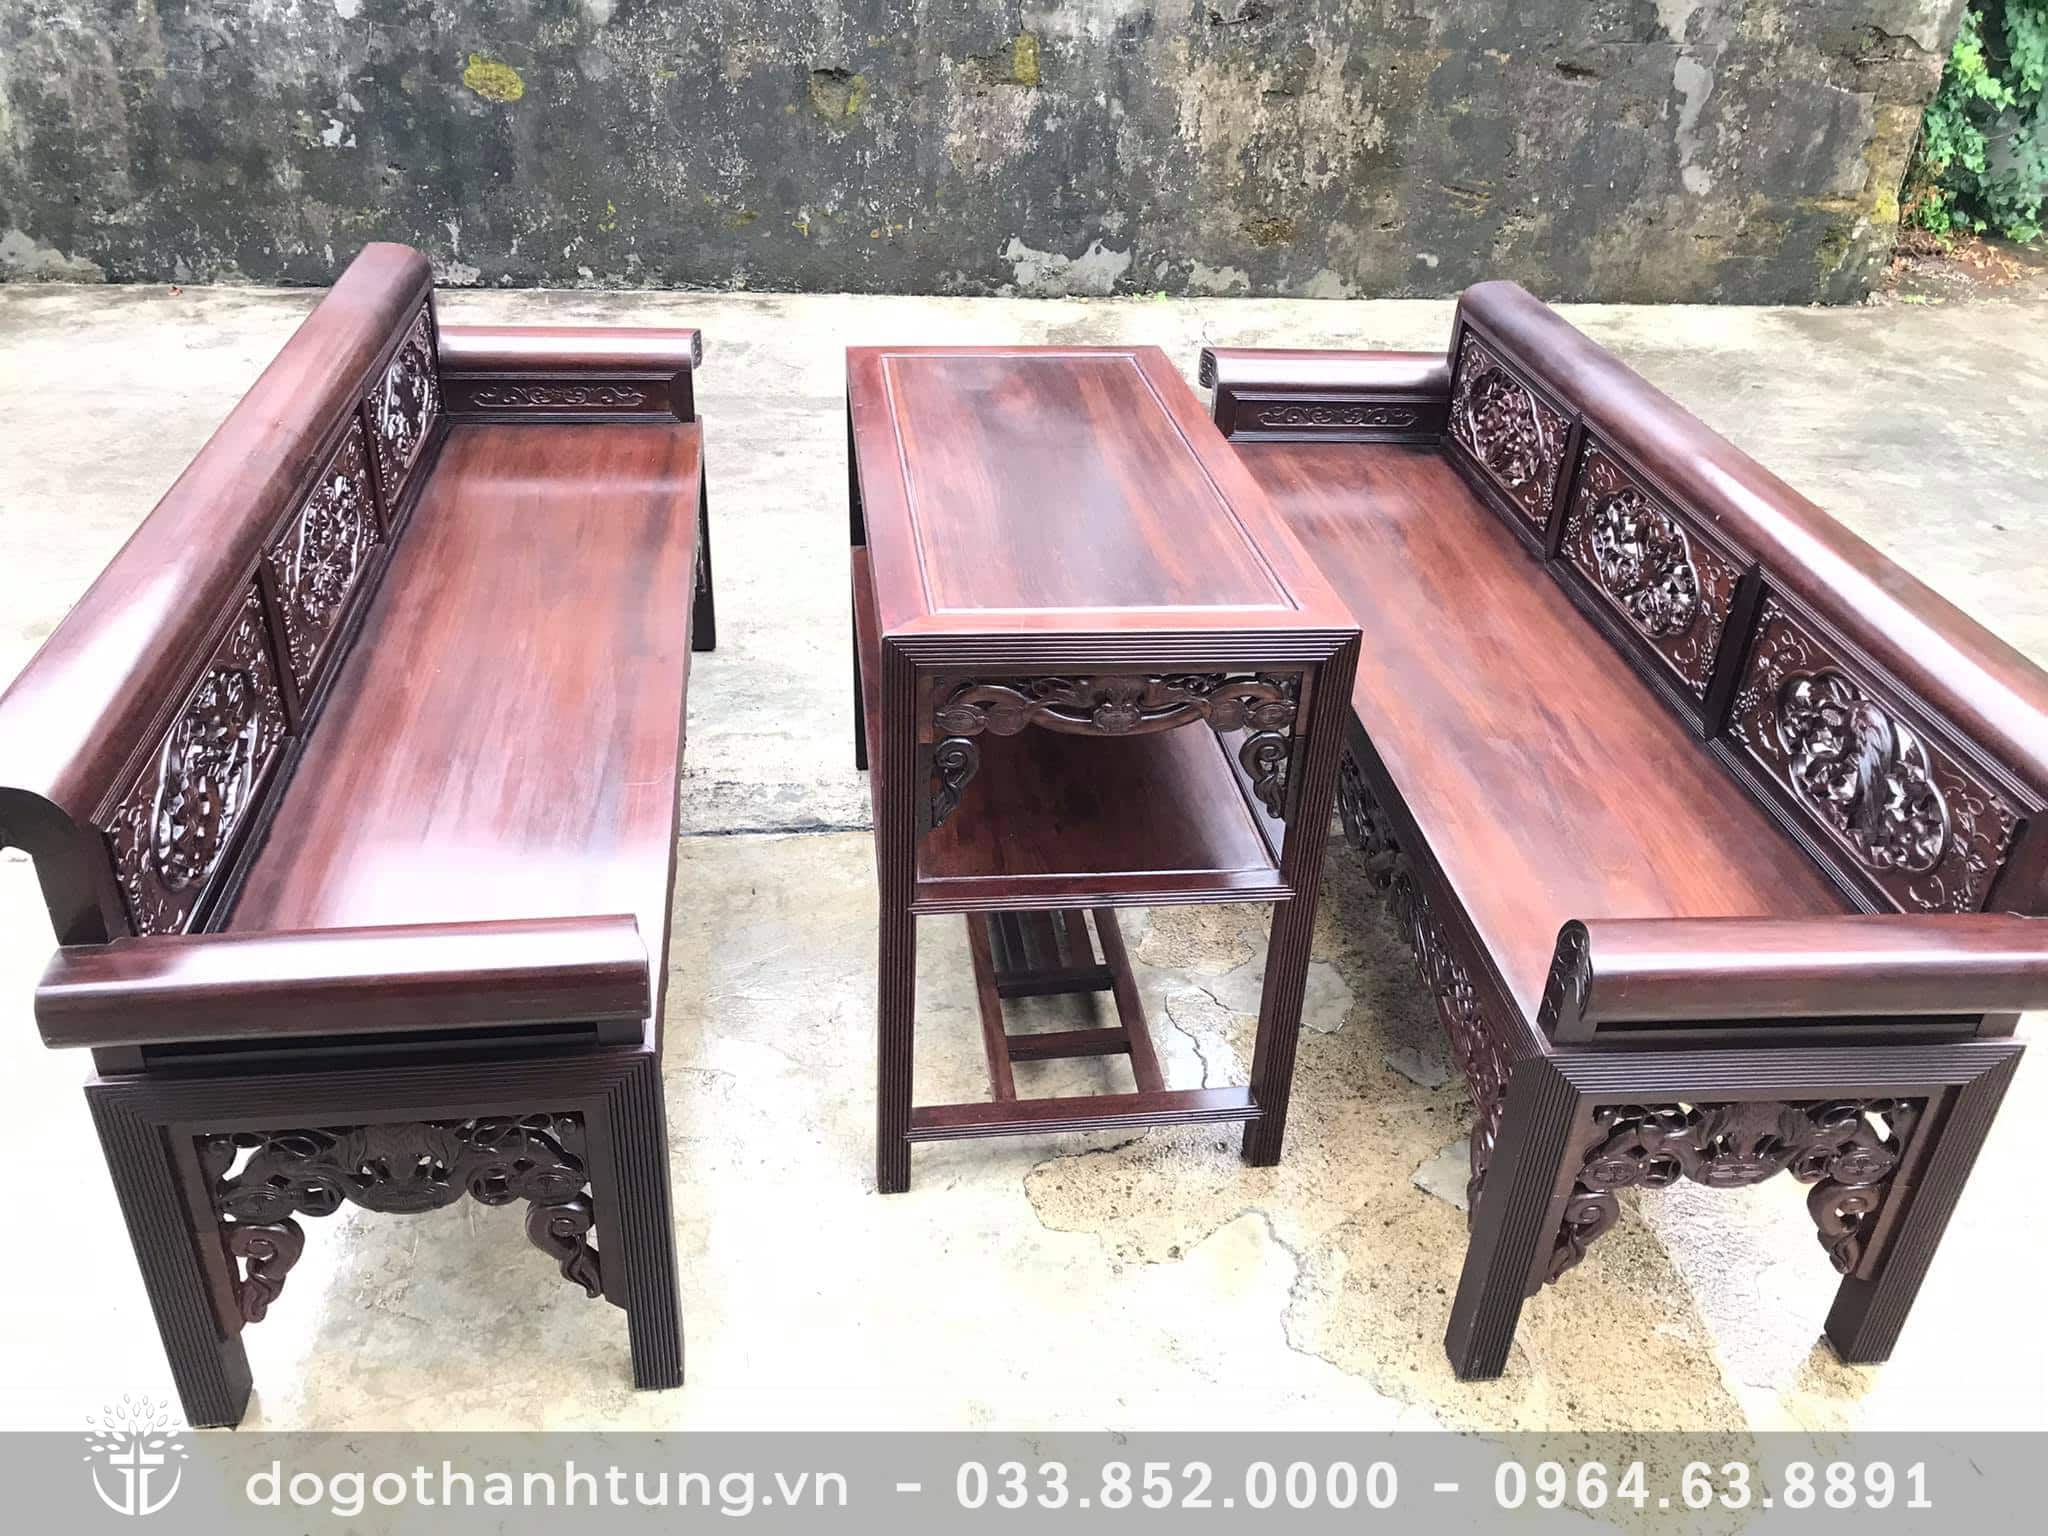 Những mẫu bàn ghế trường kỷ cổ đẹp Trường Kỷ - Langnghehaiminh.vn